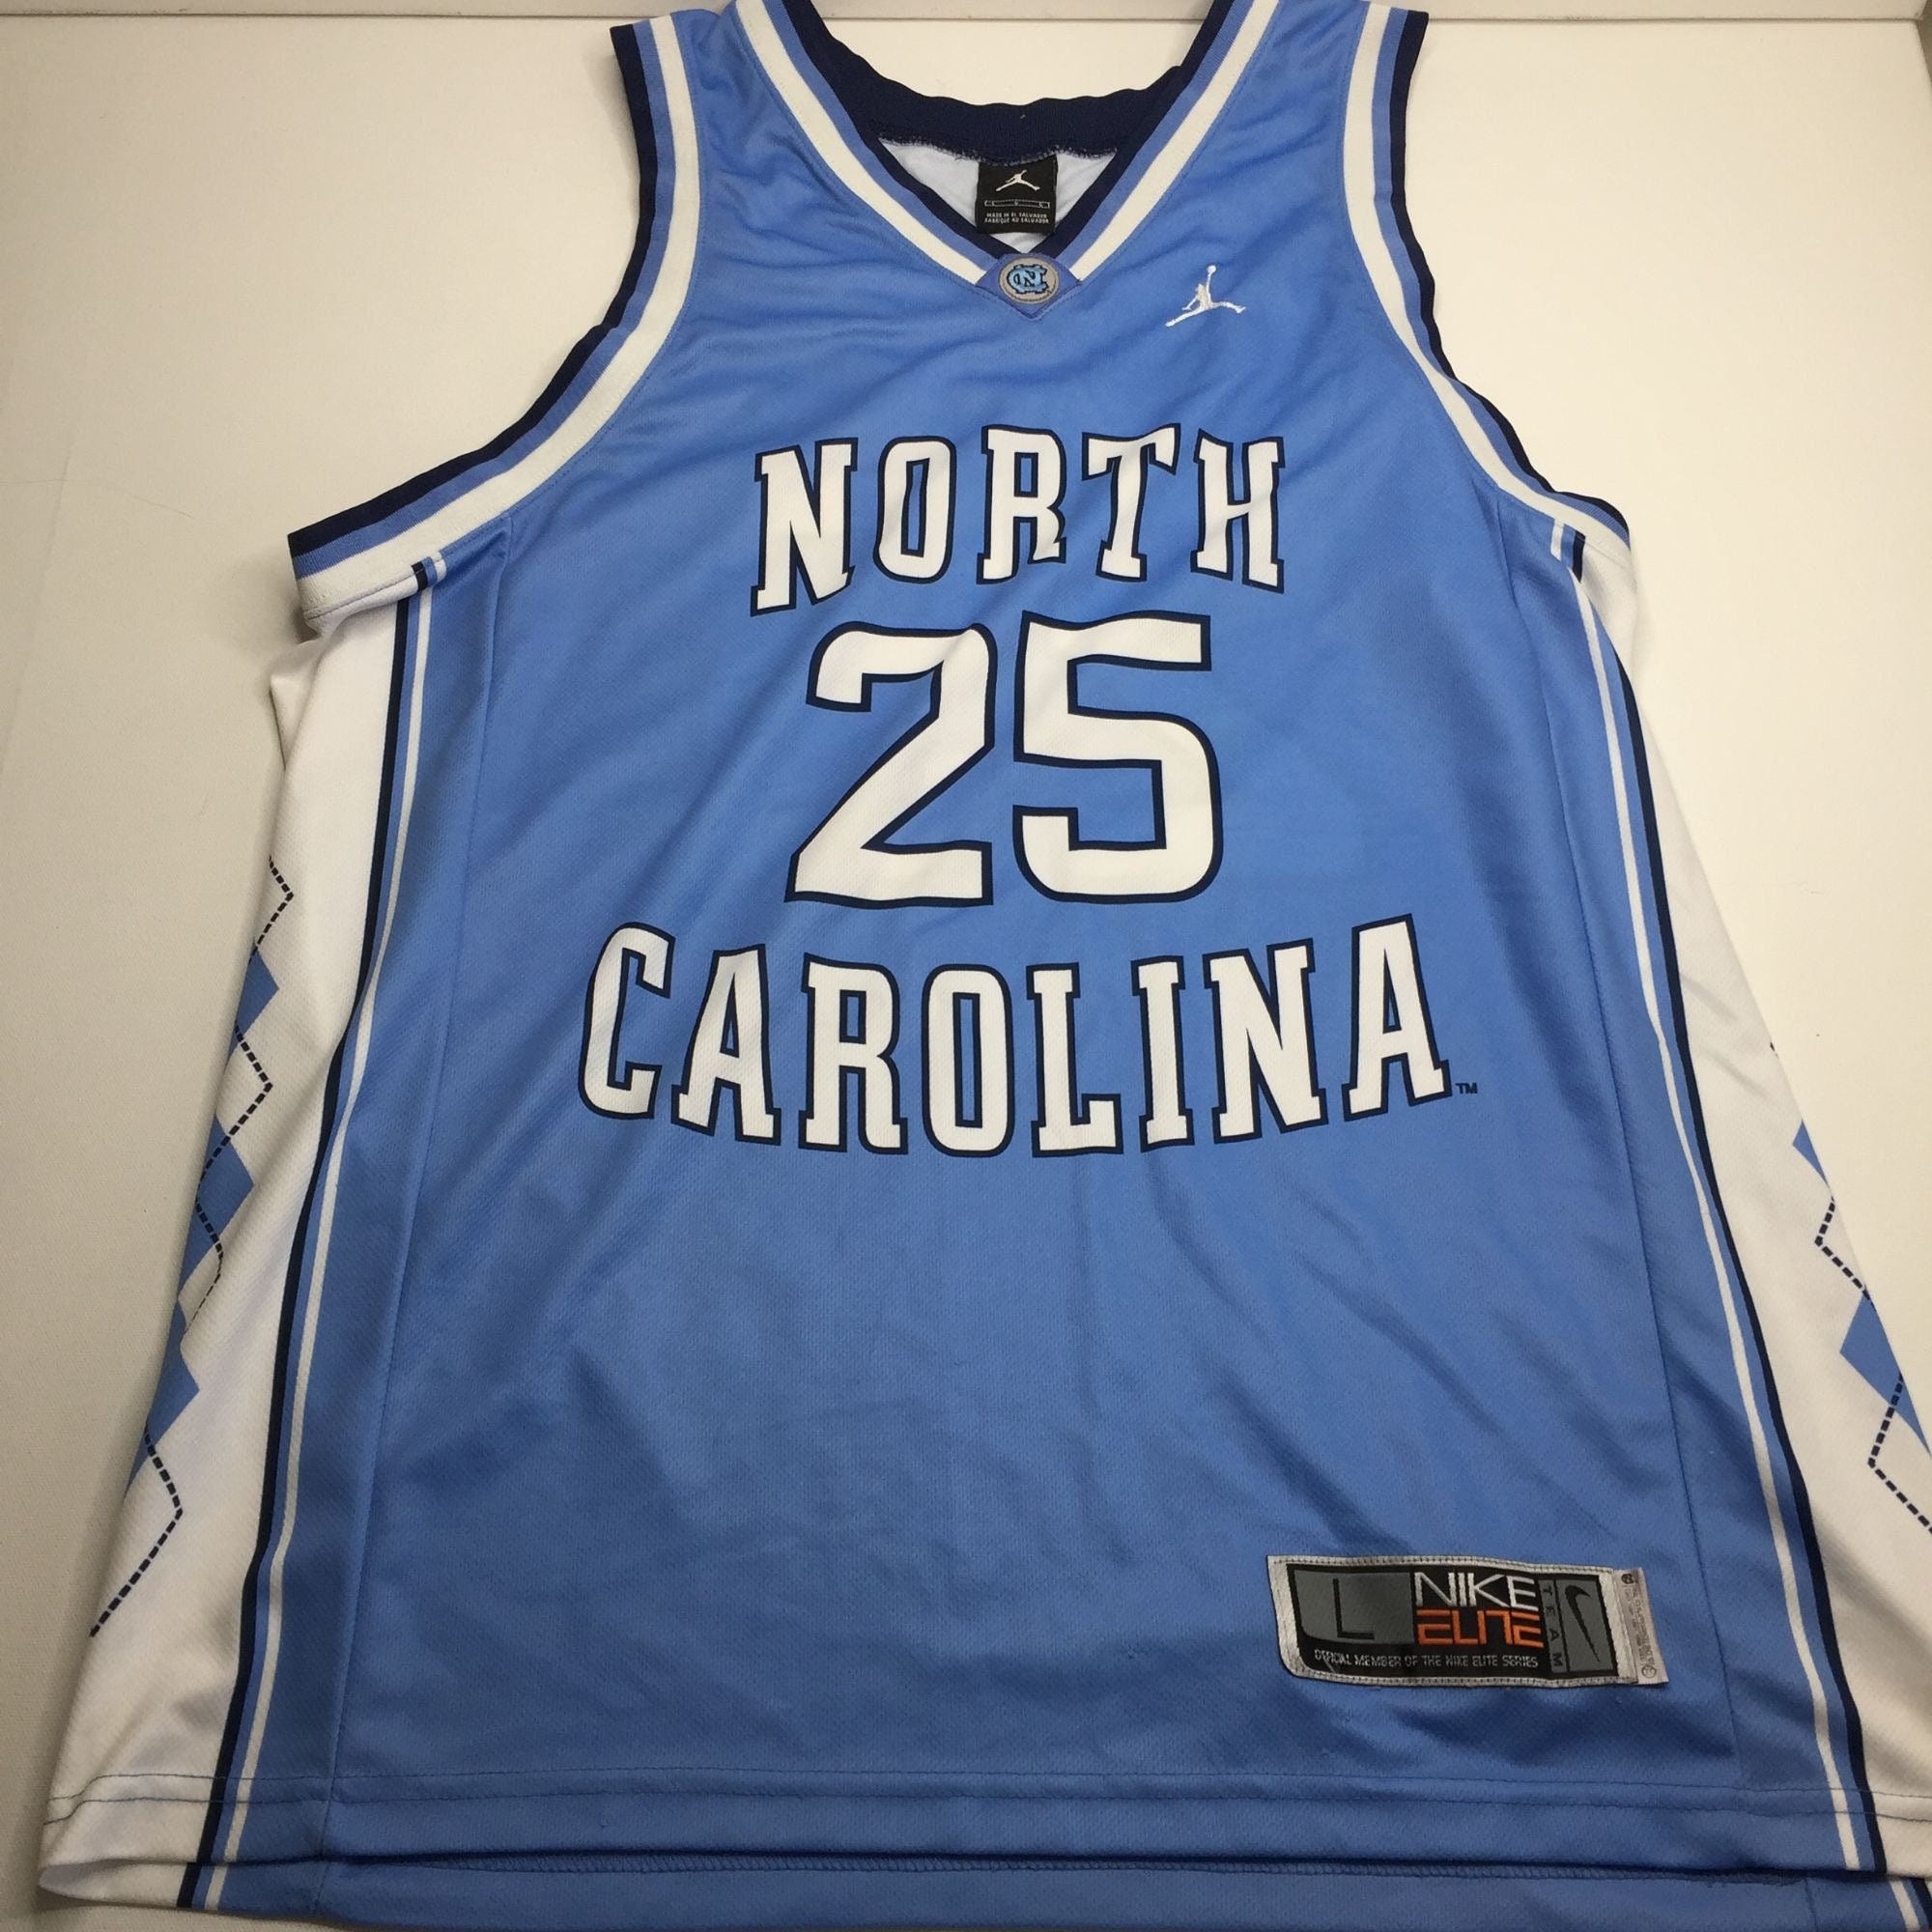 Vintage Air Jordan Nike Elite UNC Carolina Basketball Shirt Size M